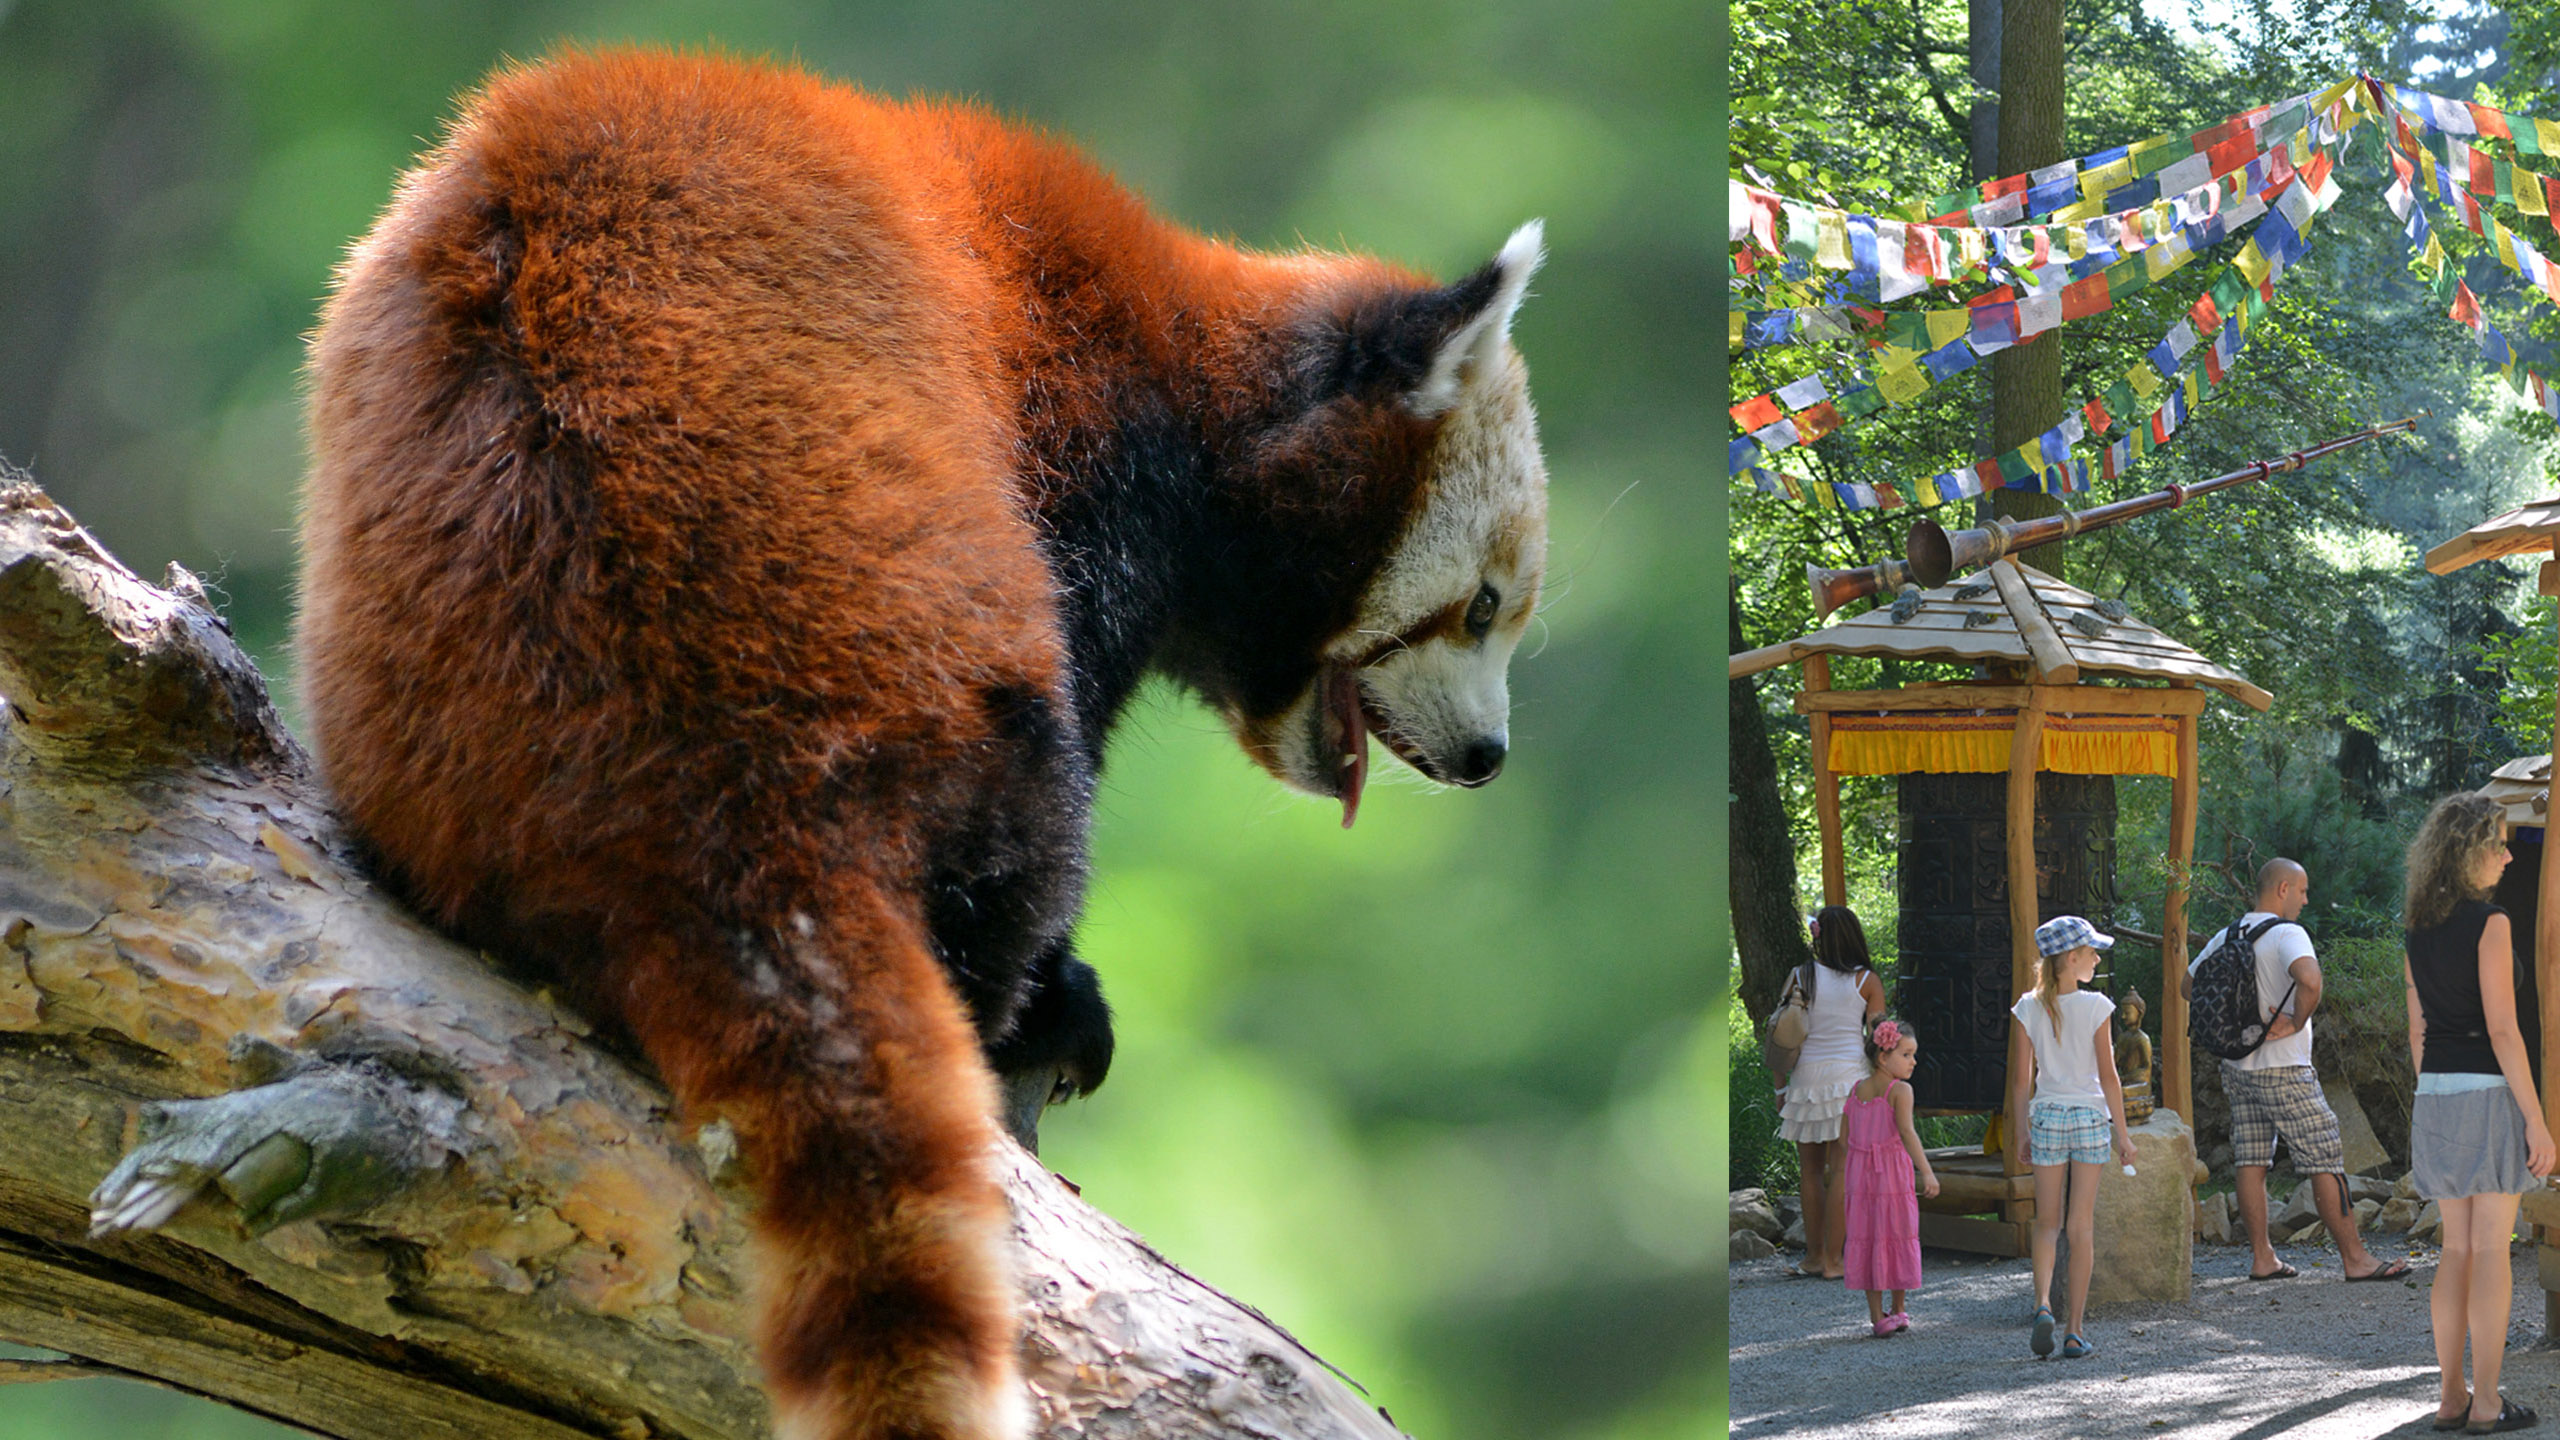 Red panda enclosure